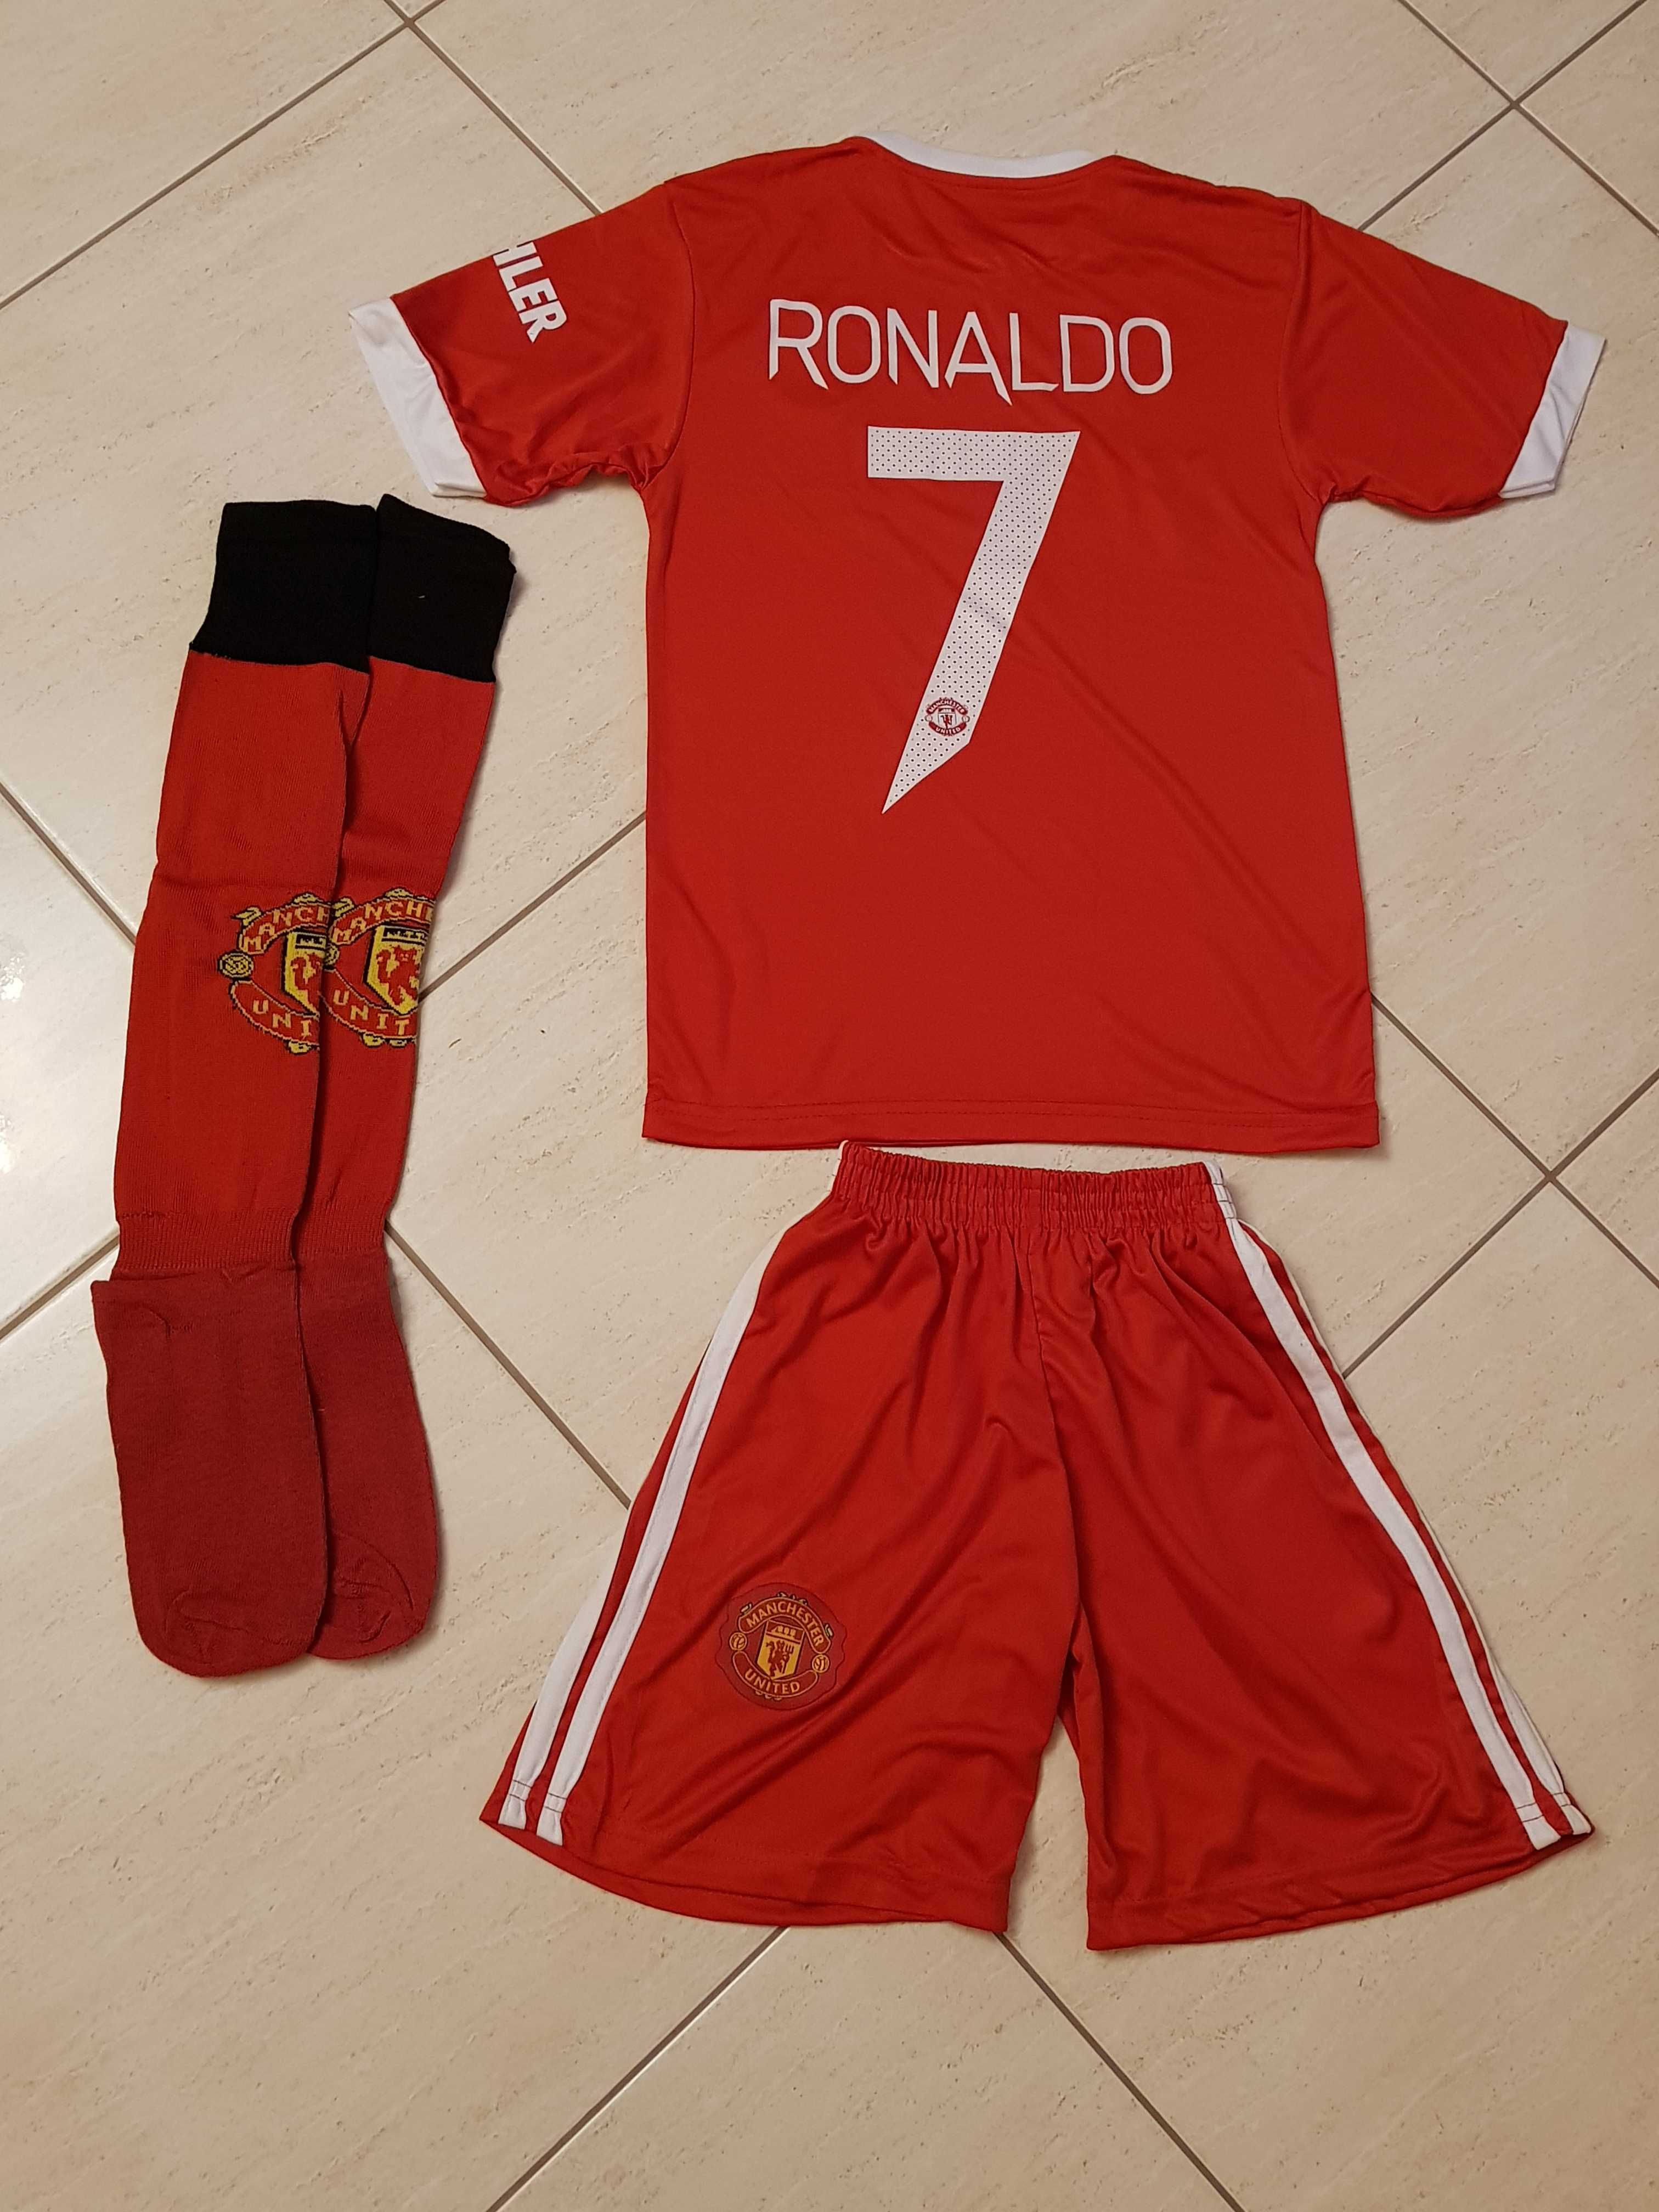 Екип + Калци Ronaldo / Роналдо Манчестър Юнайтед / Manchester CR7